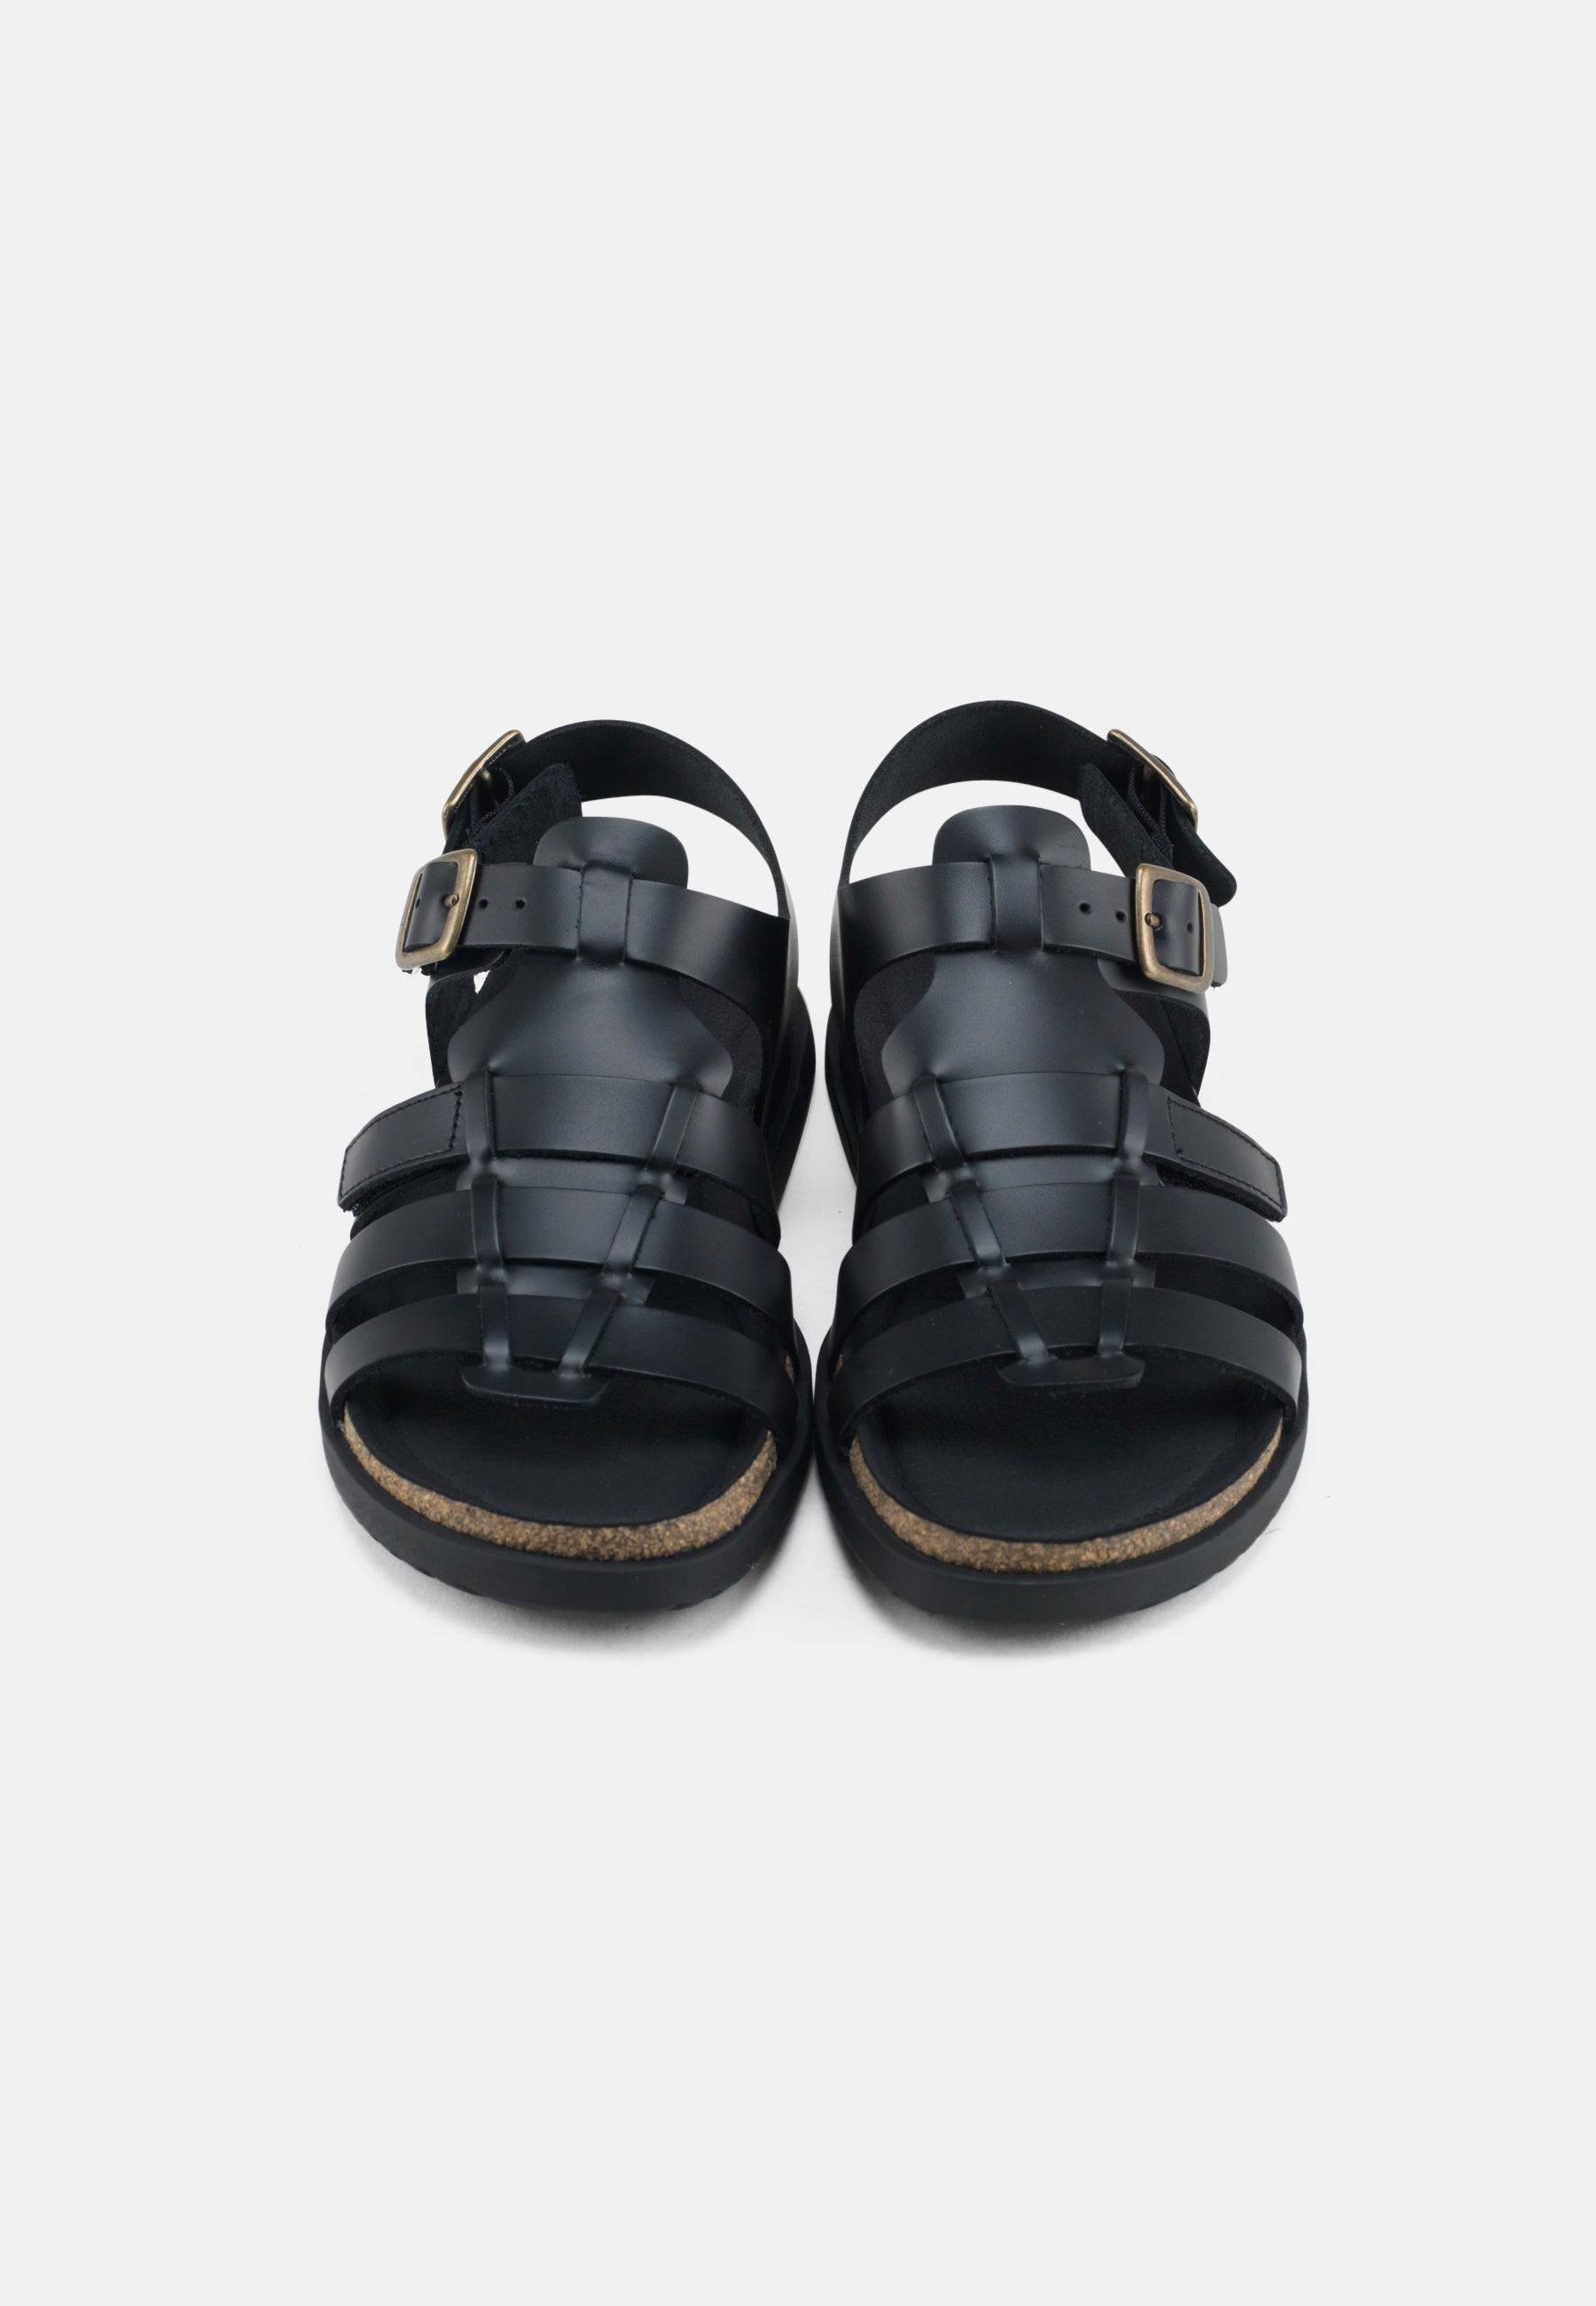 Mette Sandal Leather - Black